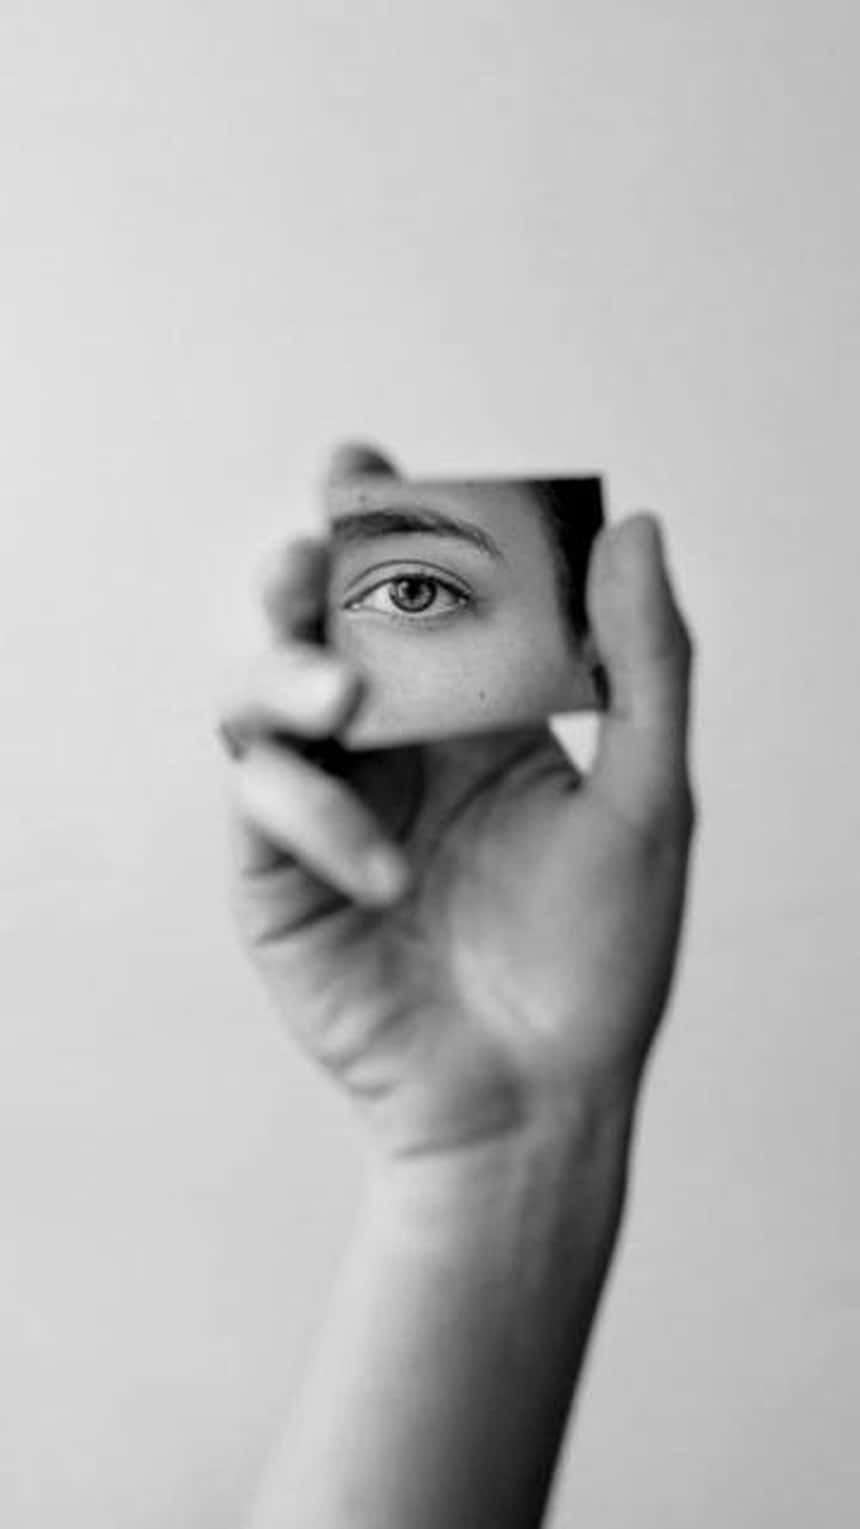 ein schwarzweiß Bild für Instagram-Reels, das eine Hand zeigt, die einen Spiegel hält